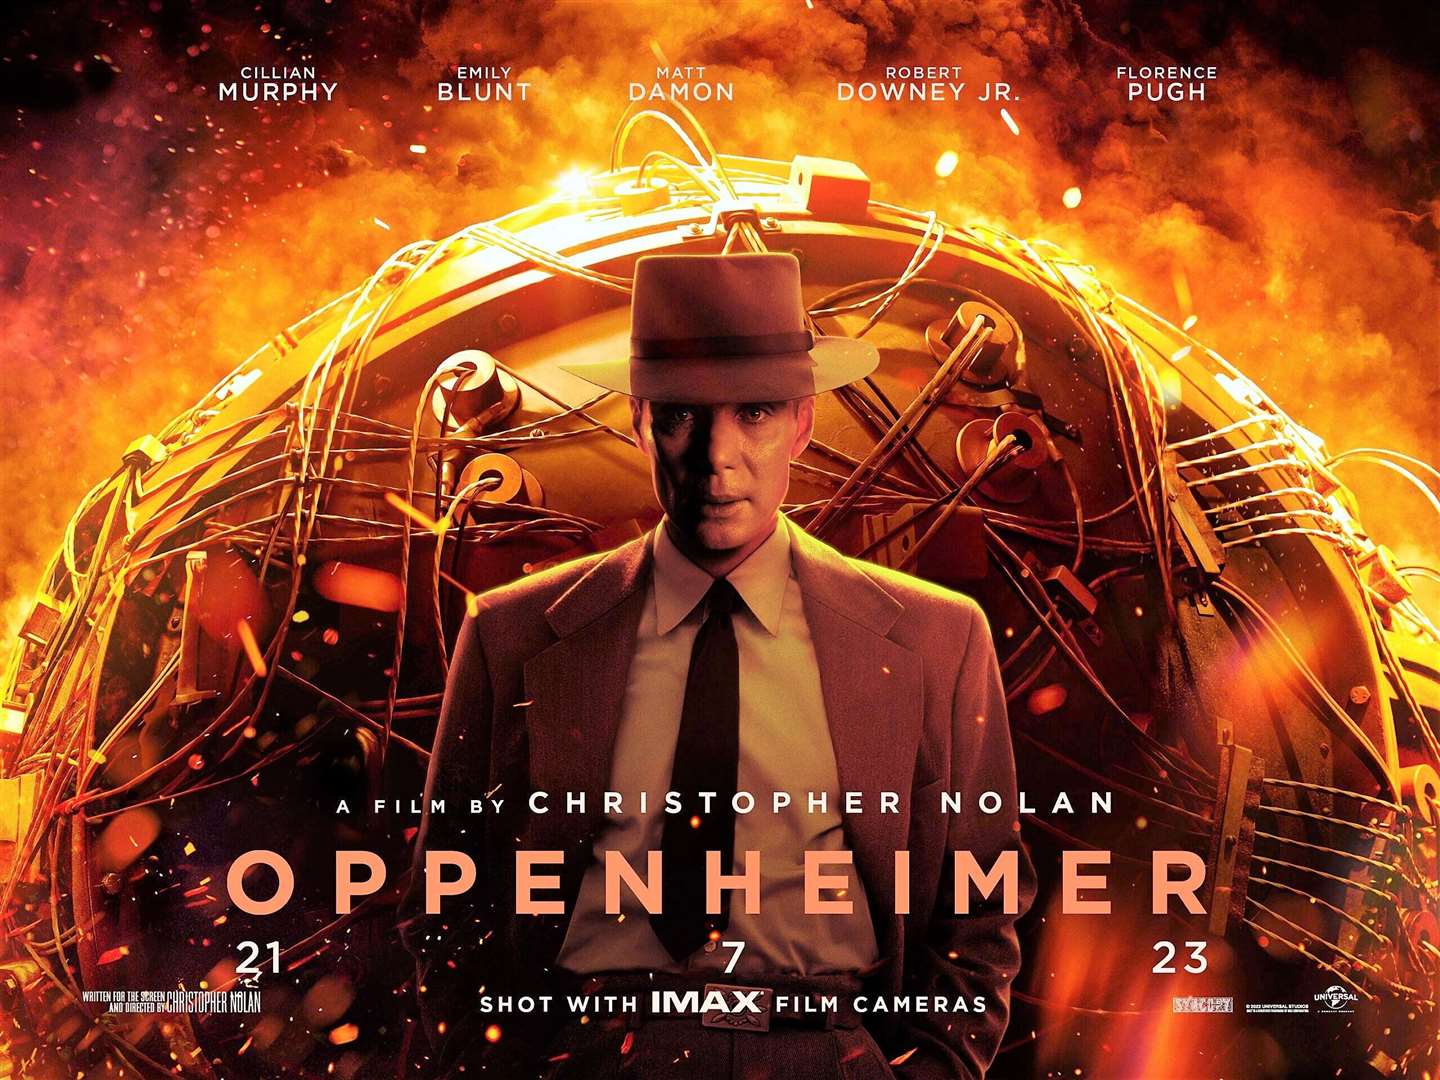 Oppenheimer movie poster.